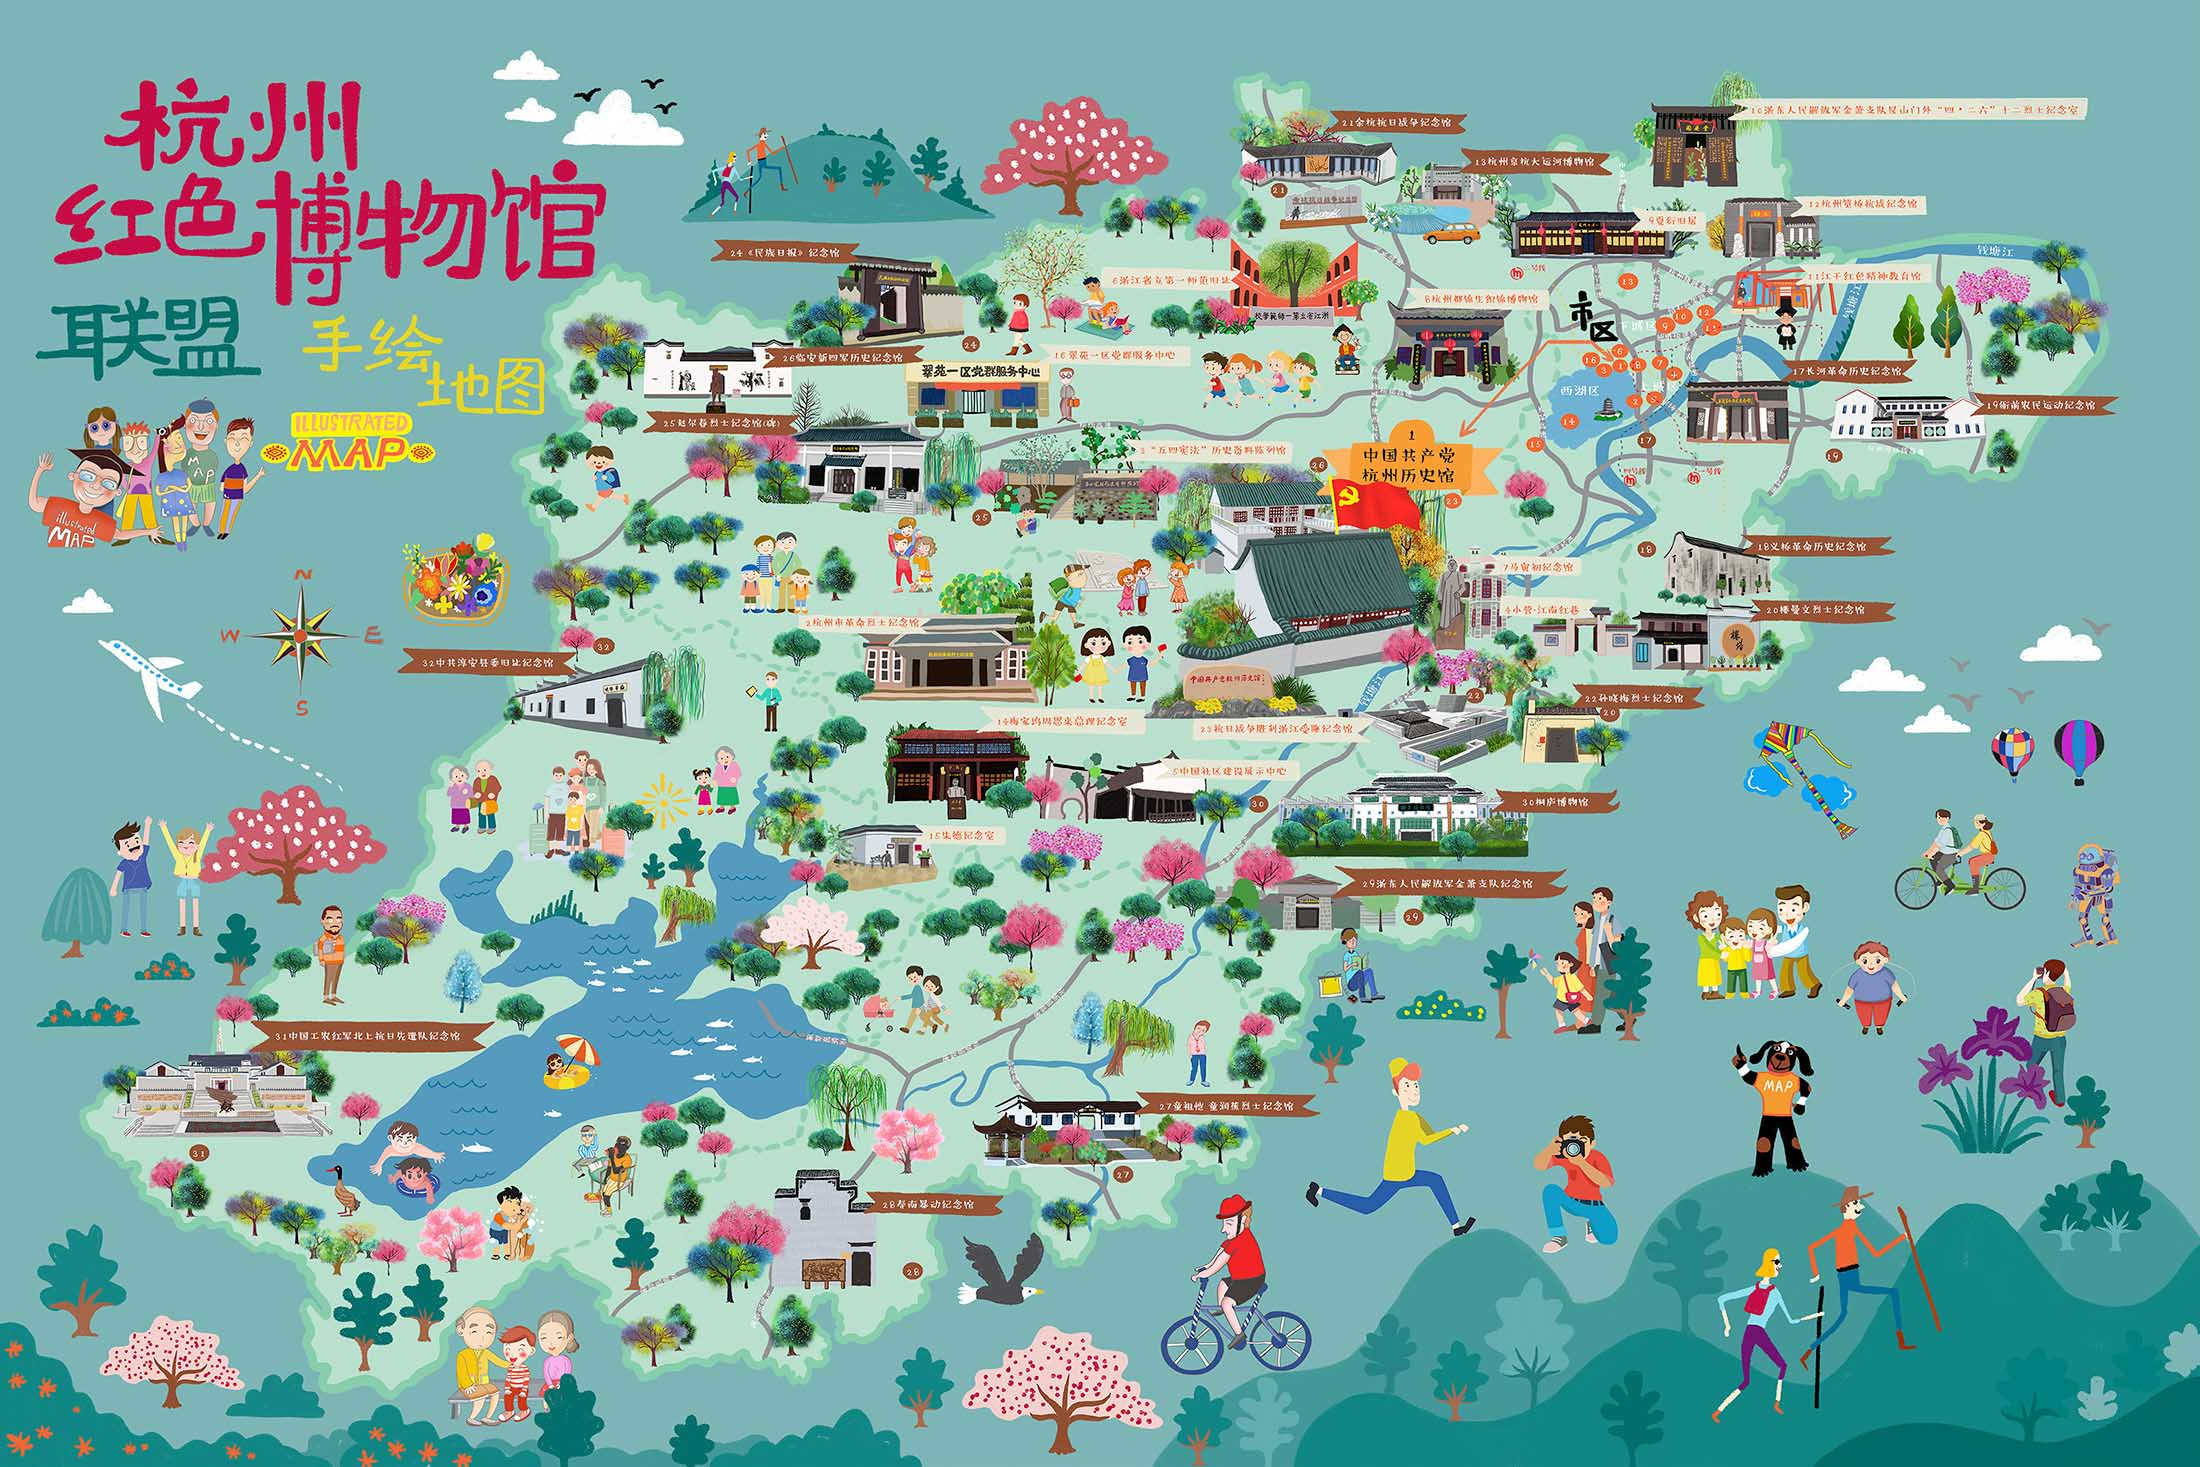 洪梅镇手绘地图与科技的完美结合 